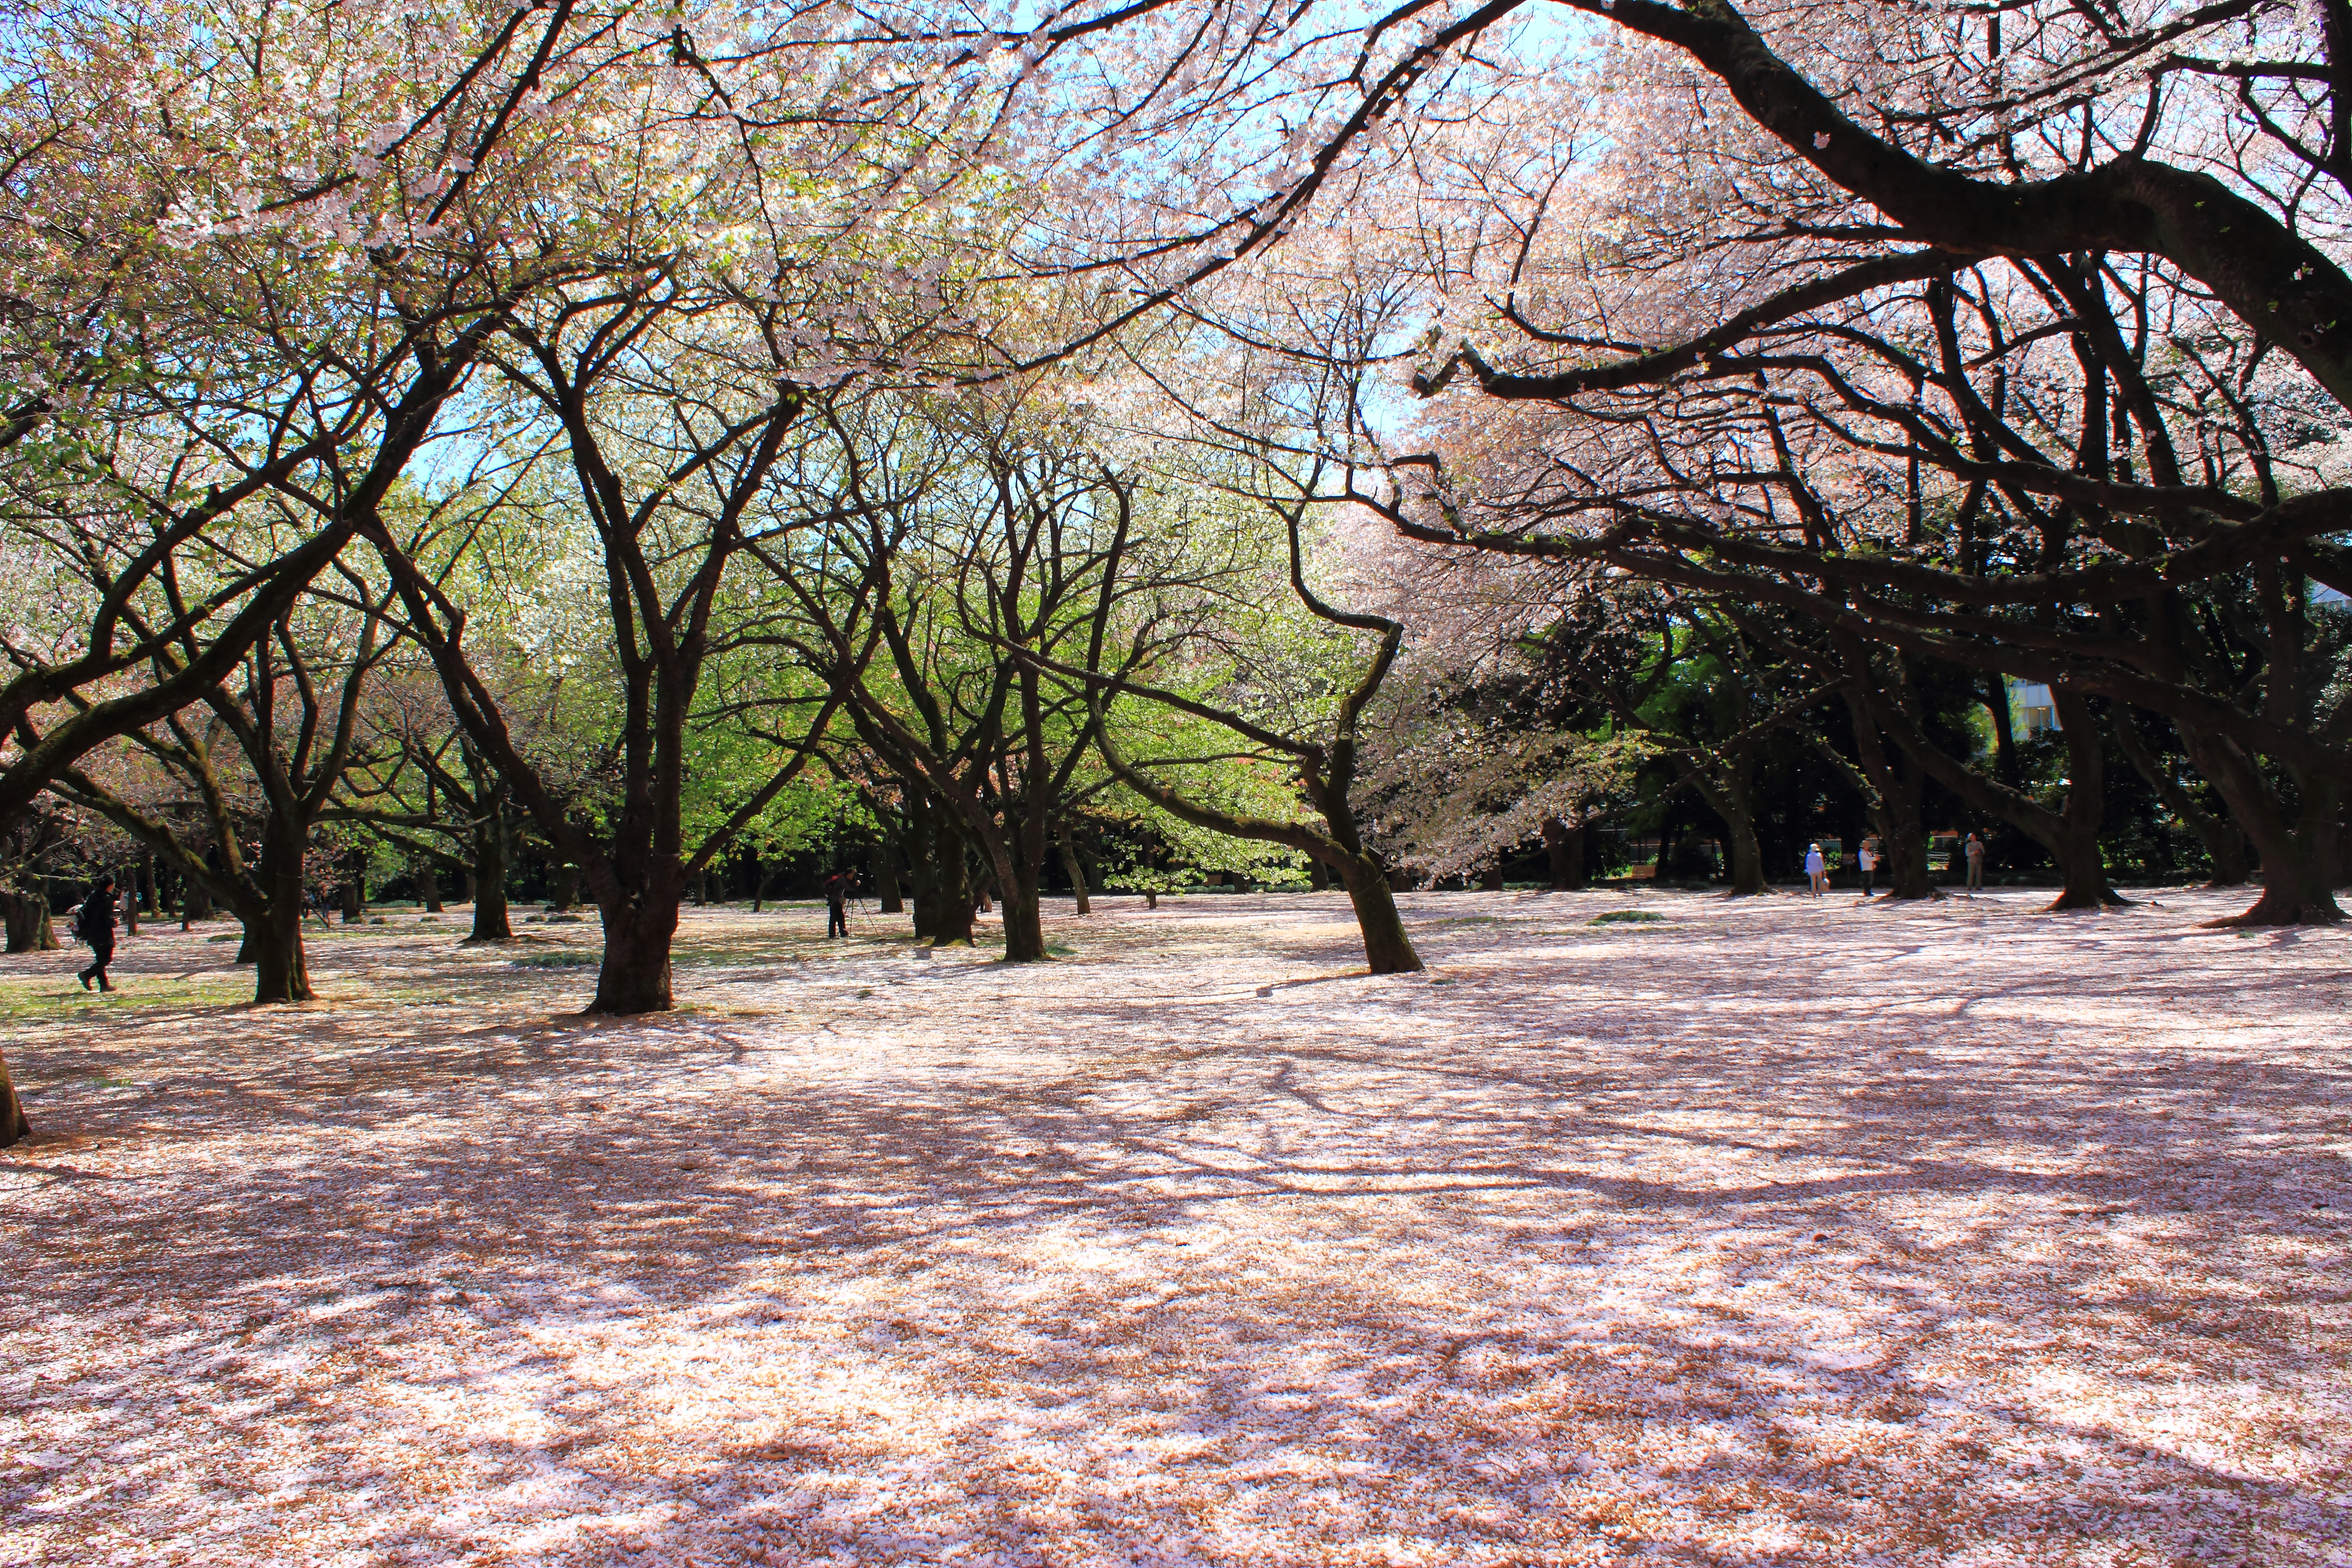 Shinjuku Gyoen National Garden , HD Wallpaper & Backgrounds